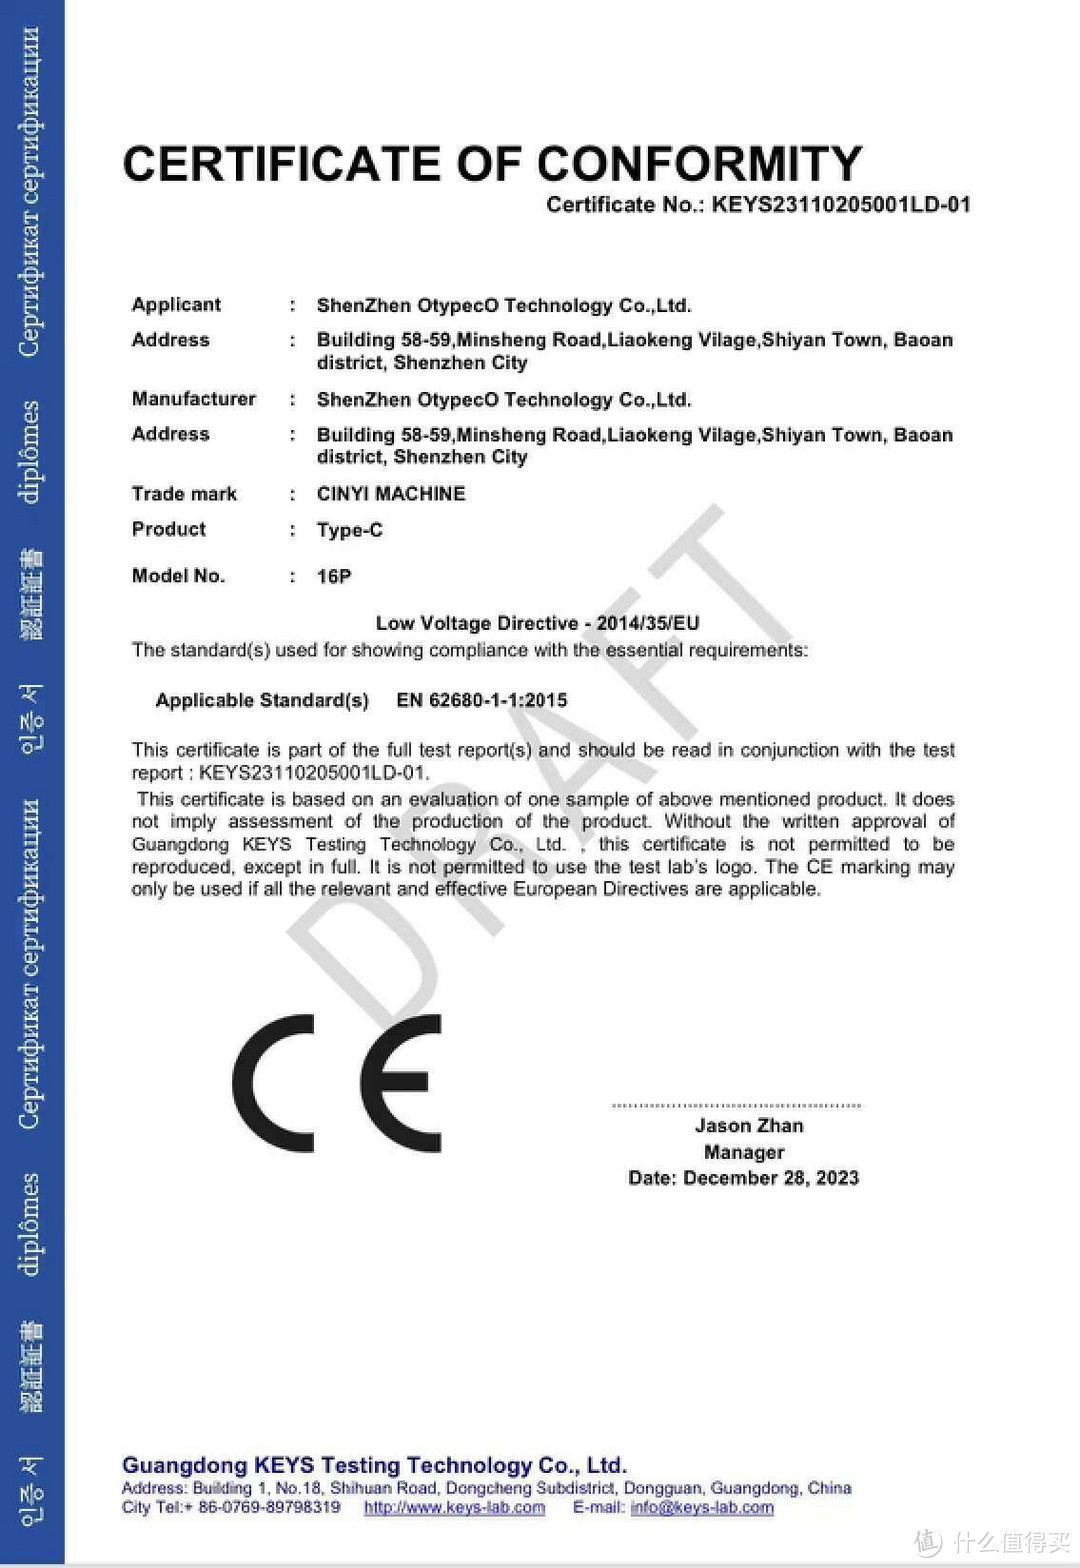 泰普生16Pin Type-c母座通过CE认证，证书编号KEYS23110205001LD-01